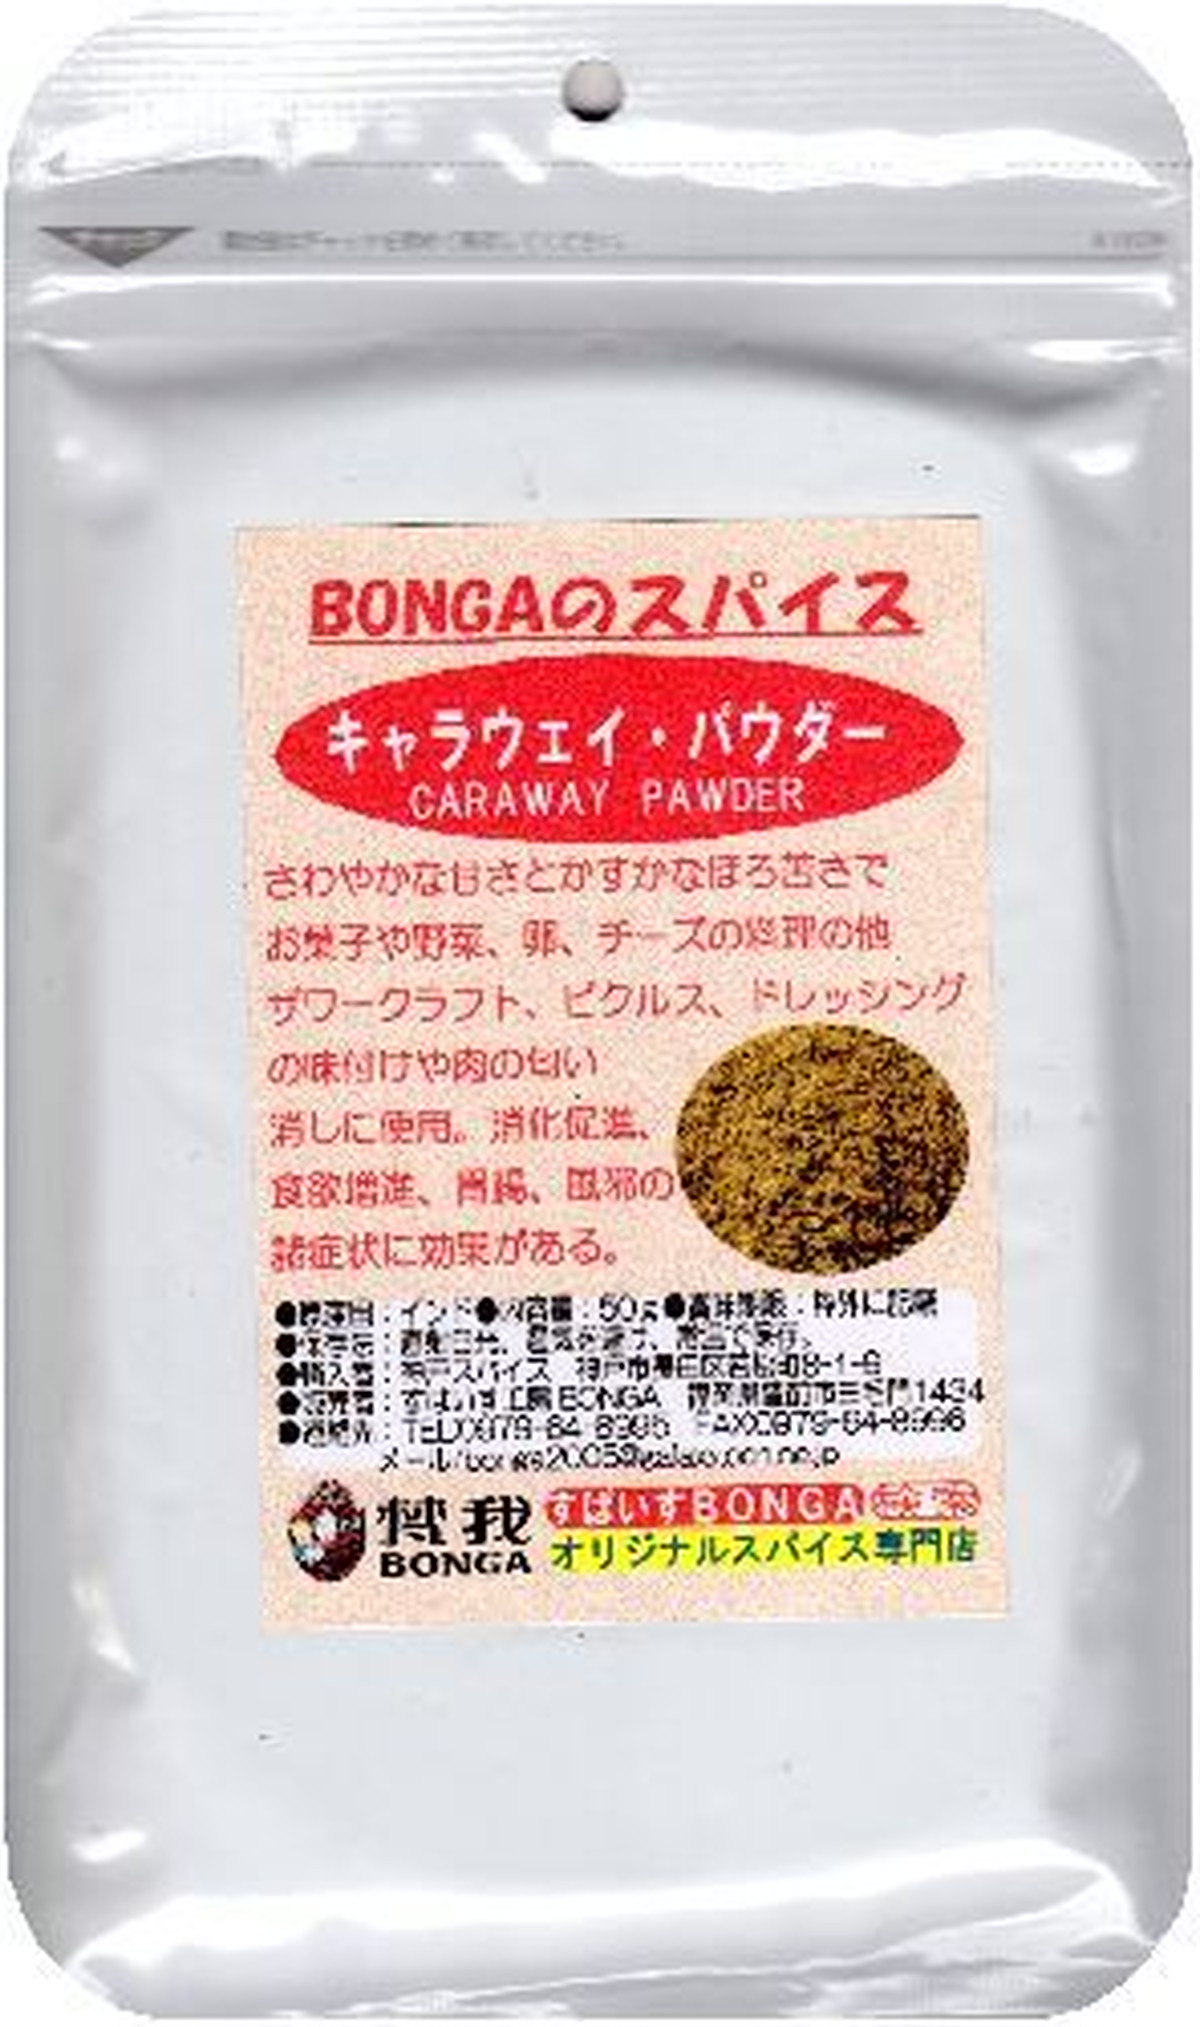 キャラウェイパウダー ヒメウイキョウ 粉 Bongaのスパイス ハーブ 50g クッキーやパンの他酸味のある料理に 全国どこでも送料無料 すぱいす工房bonga